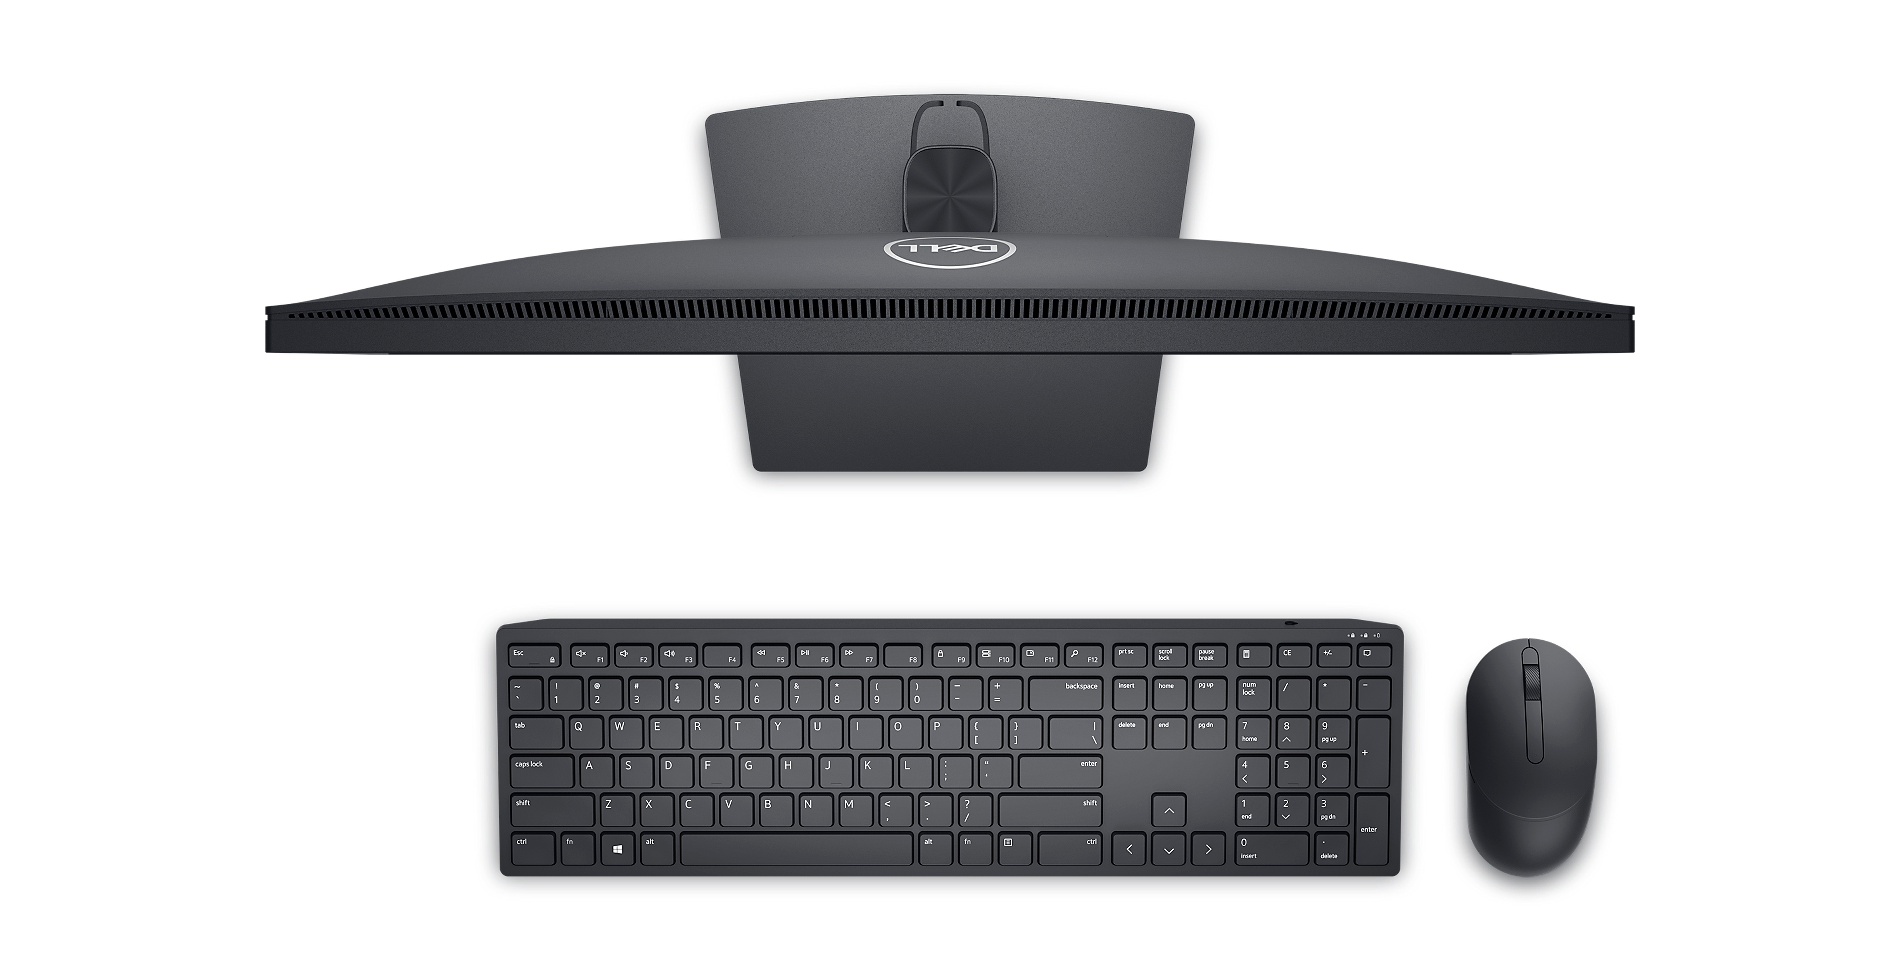 Bild eines von oben dargestellten Dell E2223HN-Monitors mit Dell Tastatur und Maus vor dem Produkt.